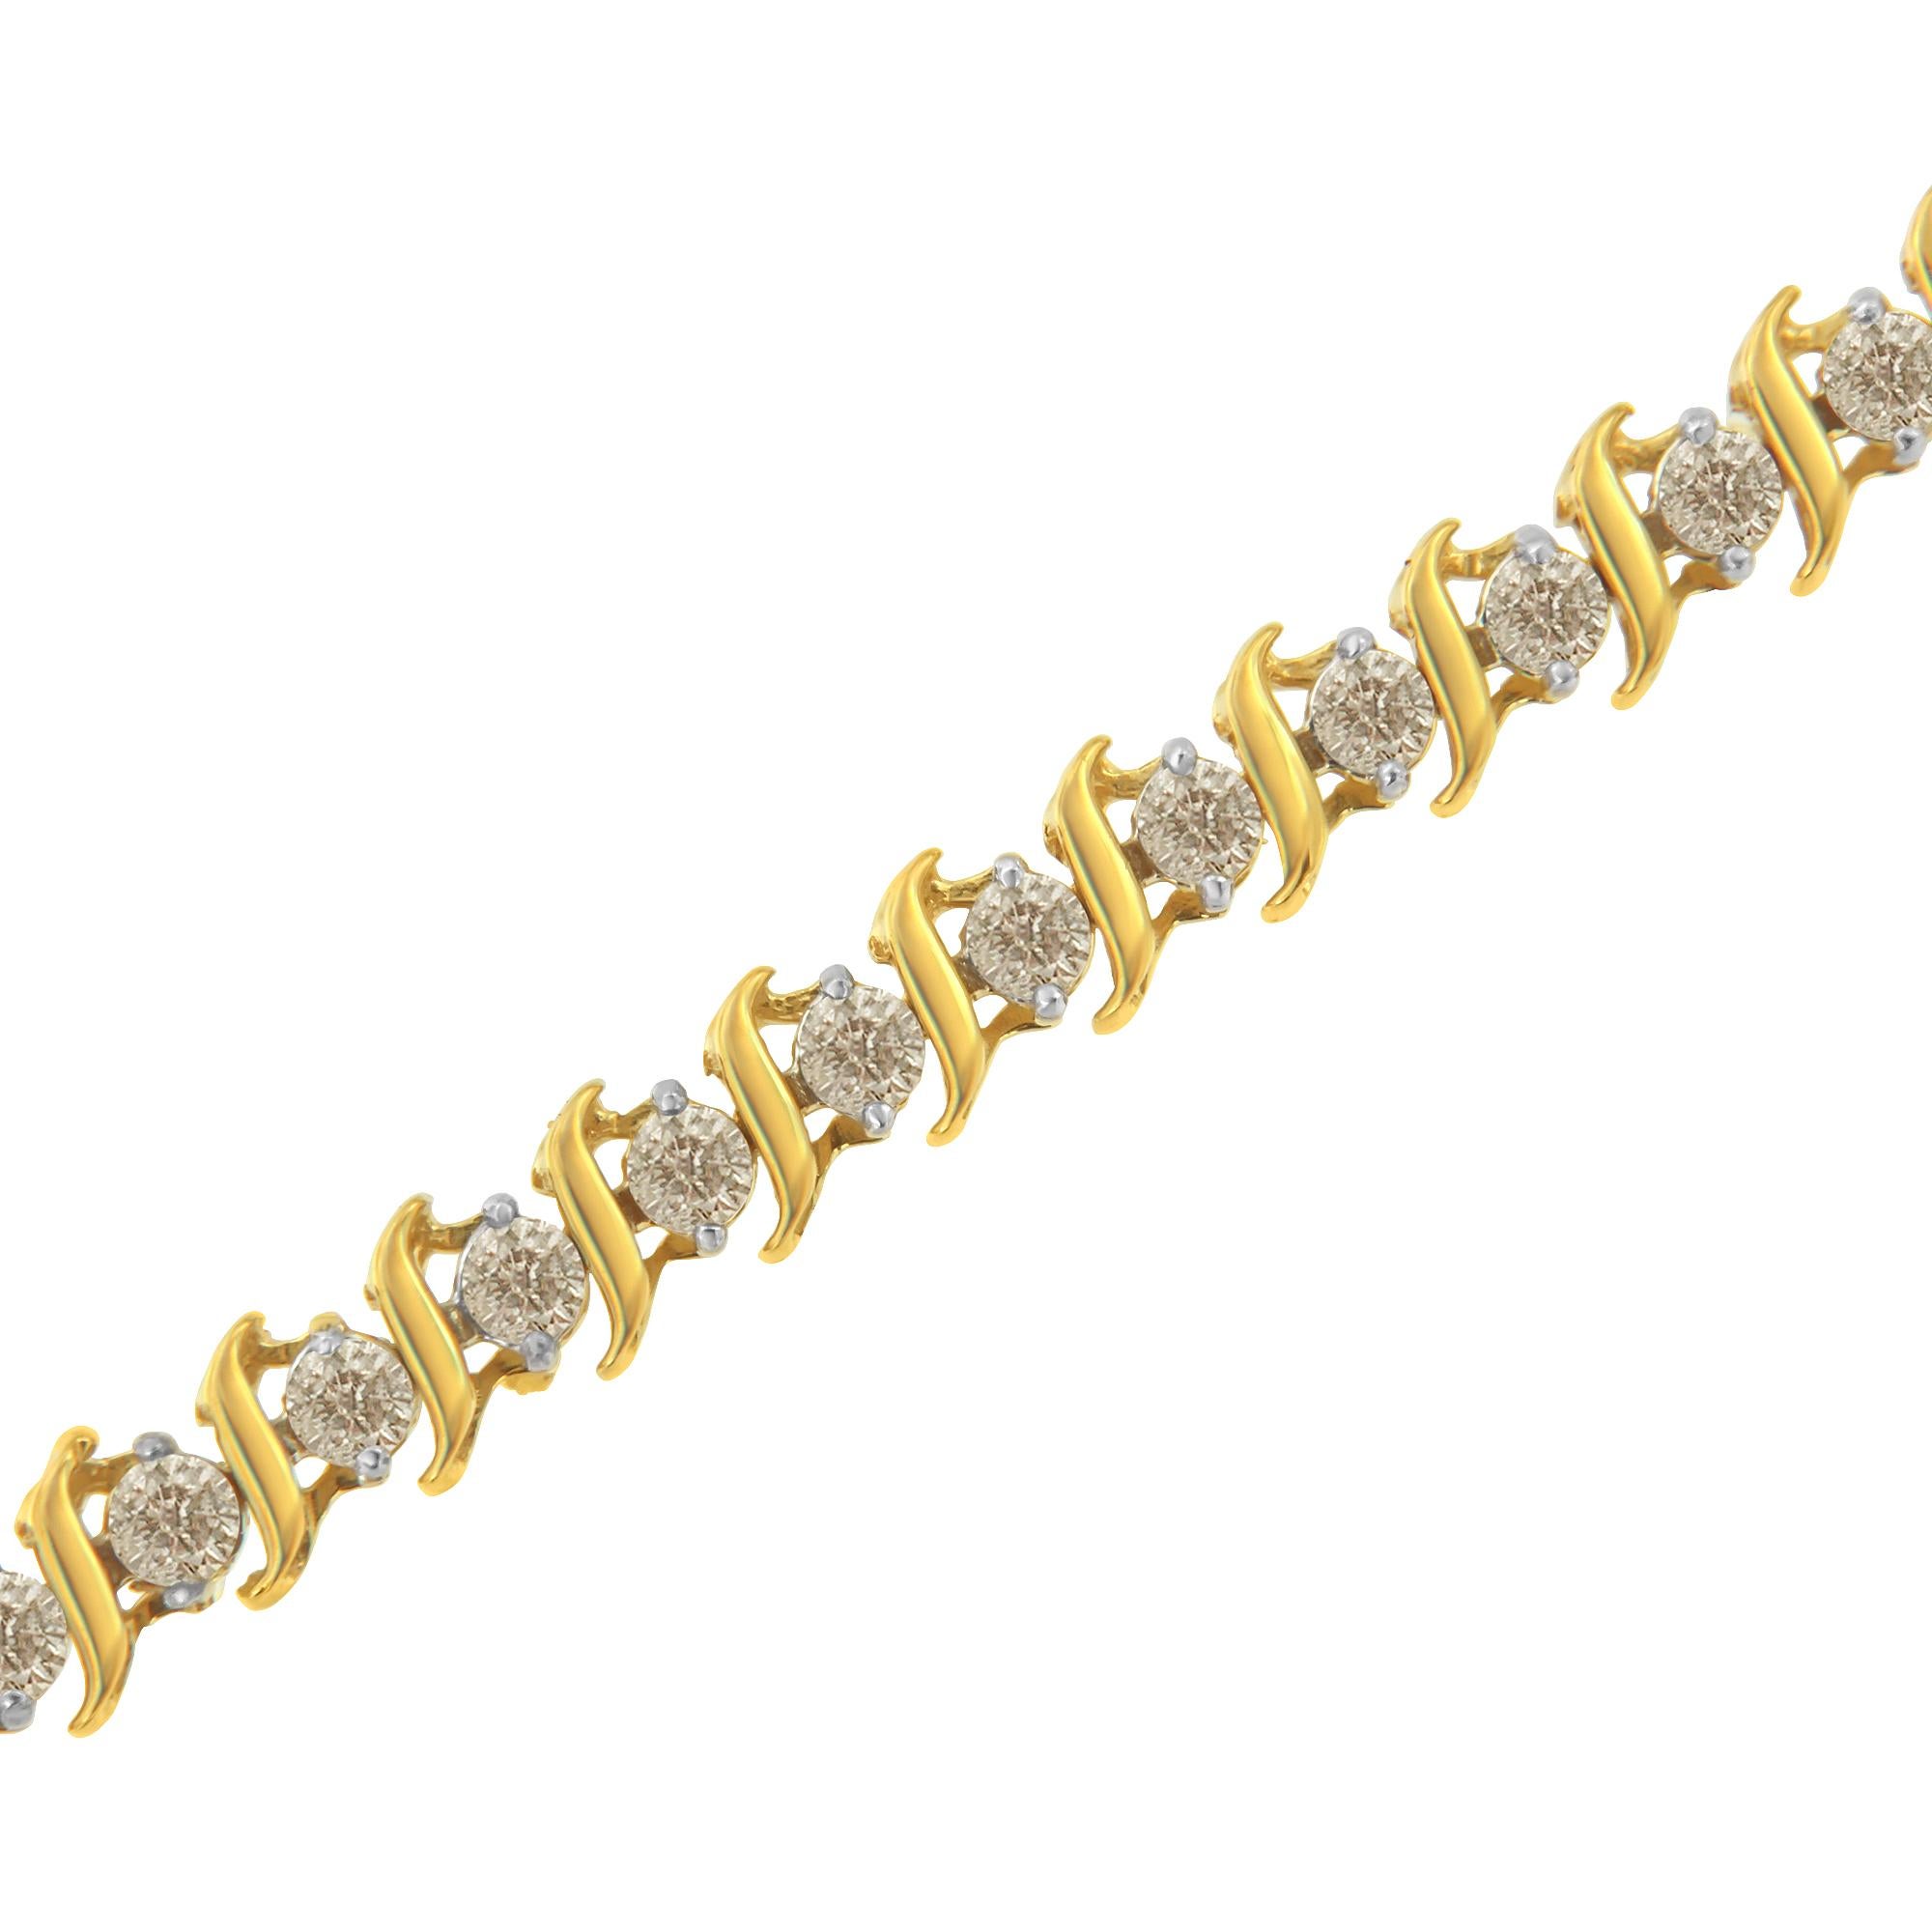 Elegant et intemporel, ce luxueux bracelet de tennis affiche un poids total impressionnant de 2,0 carats de diamants ronds. Il présente des vagues en forme de S en or jaune plaqué 10K alternées avec des diamants ronds en sertissage à deux branches.